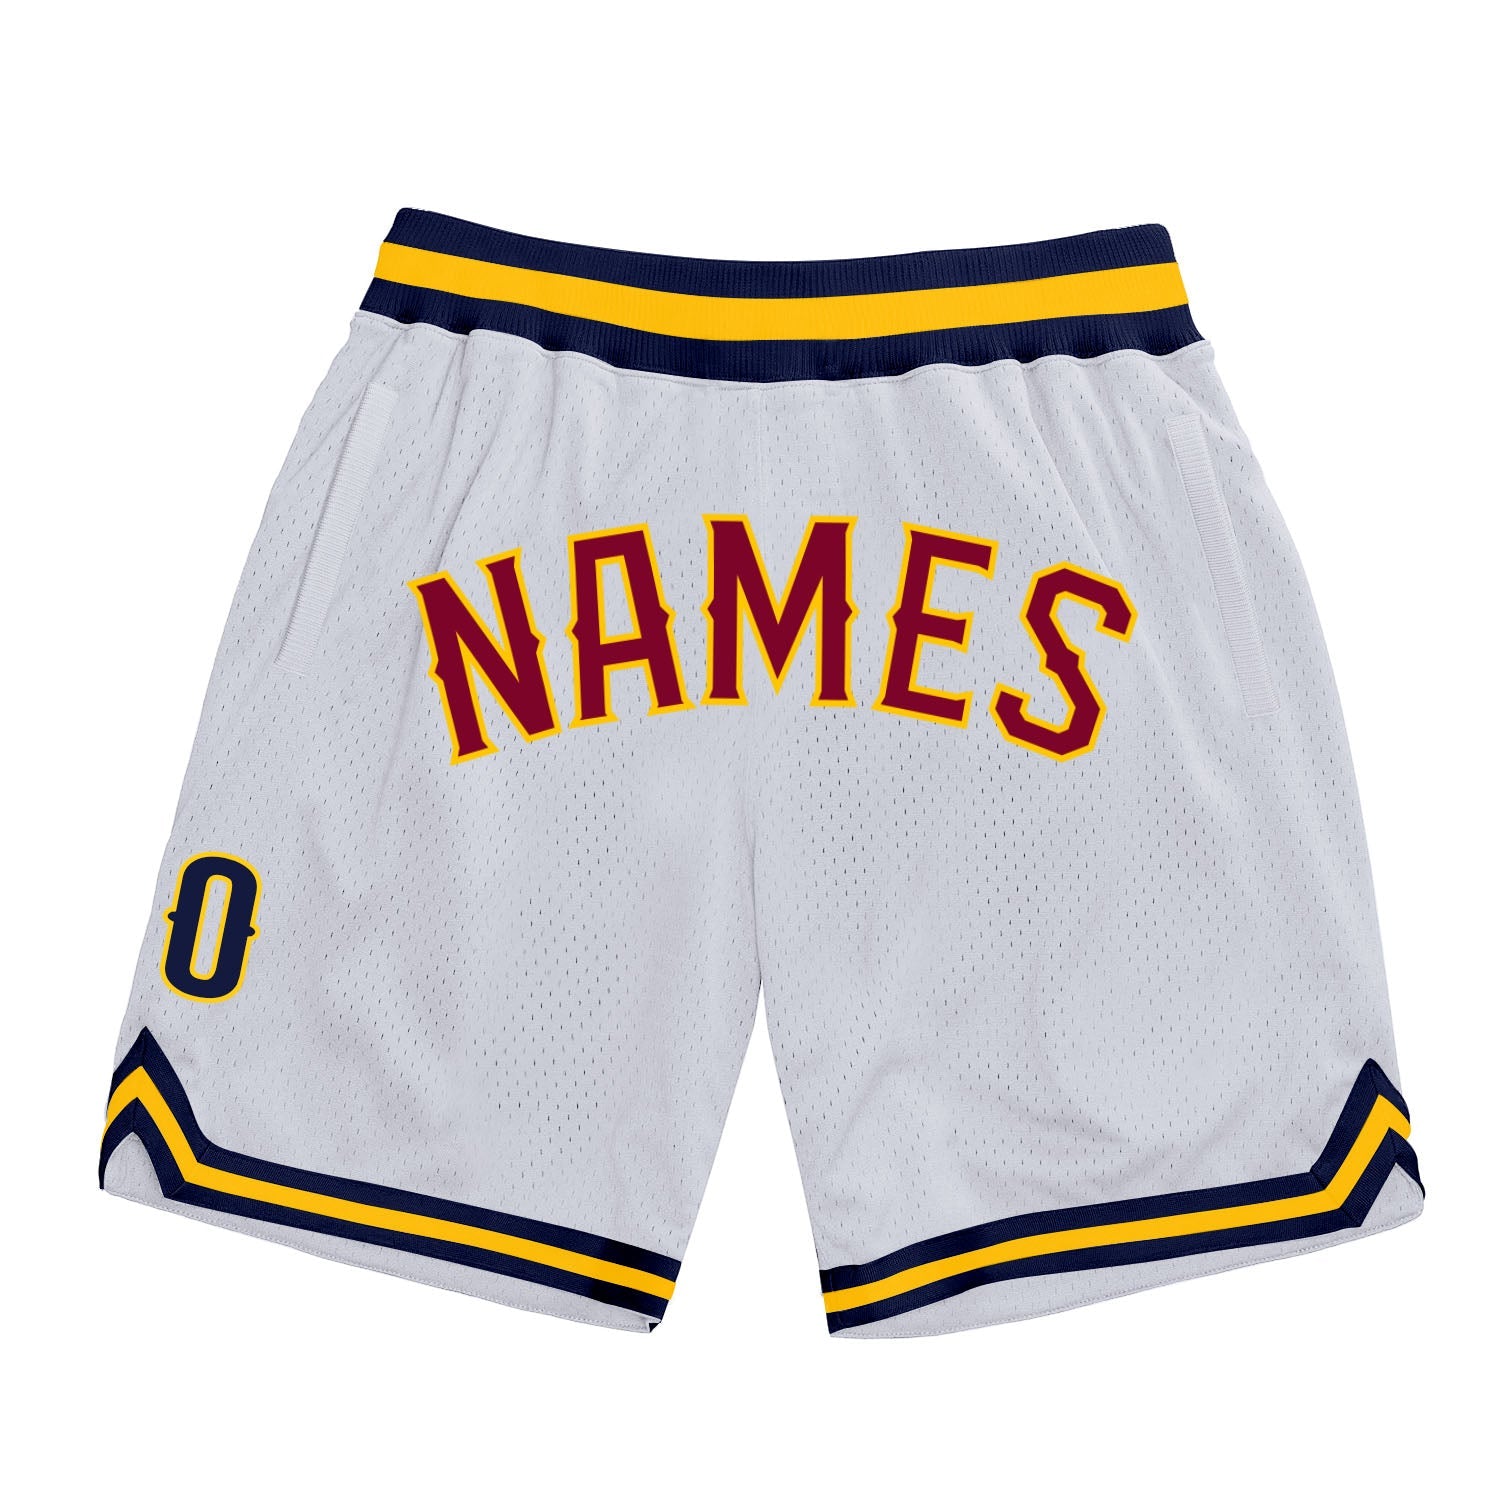 Shorts de basquete autênticos, brancos, marrom-ouro, personalizados